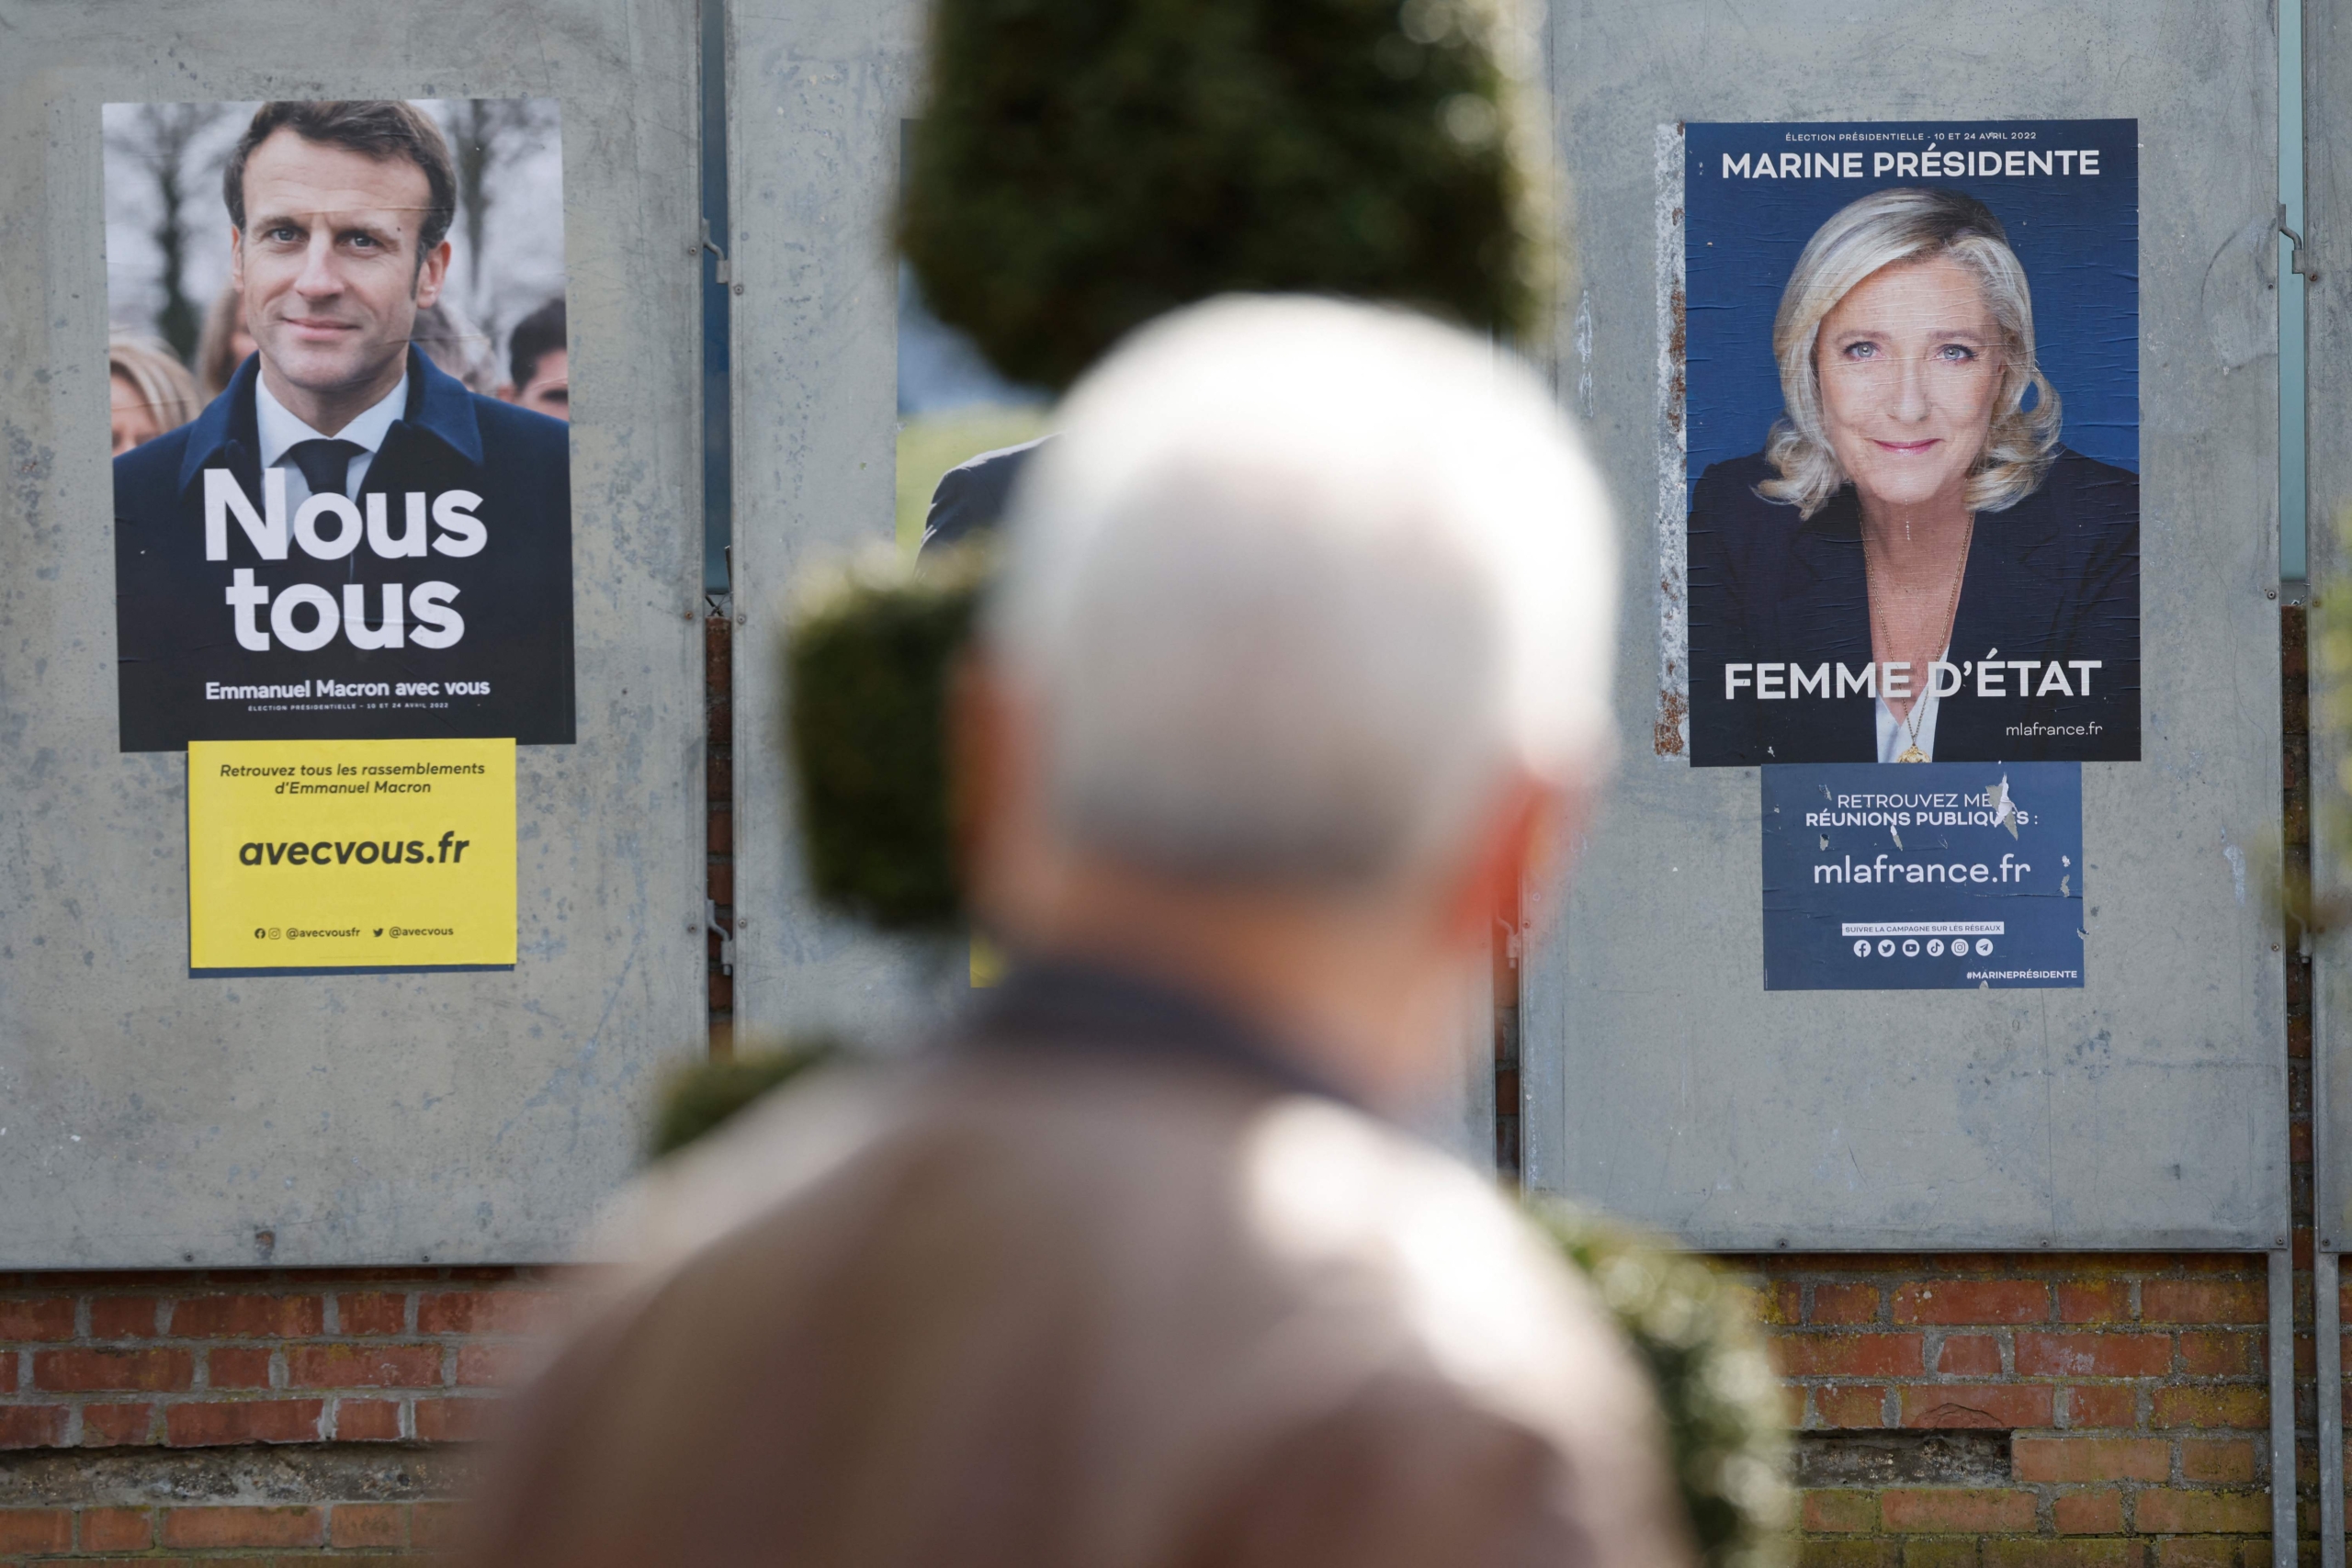 Cartells electorals d'Emmanuel Macron i Marine Le Pen, per a la campanya de les eleccions presidencials de França / Ludovic Marin/AFP/dpa/Europa Press